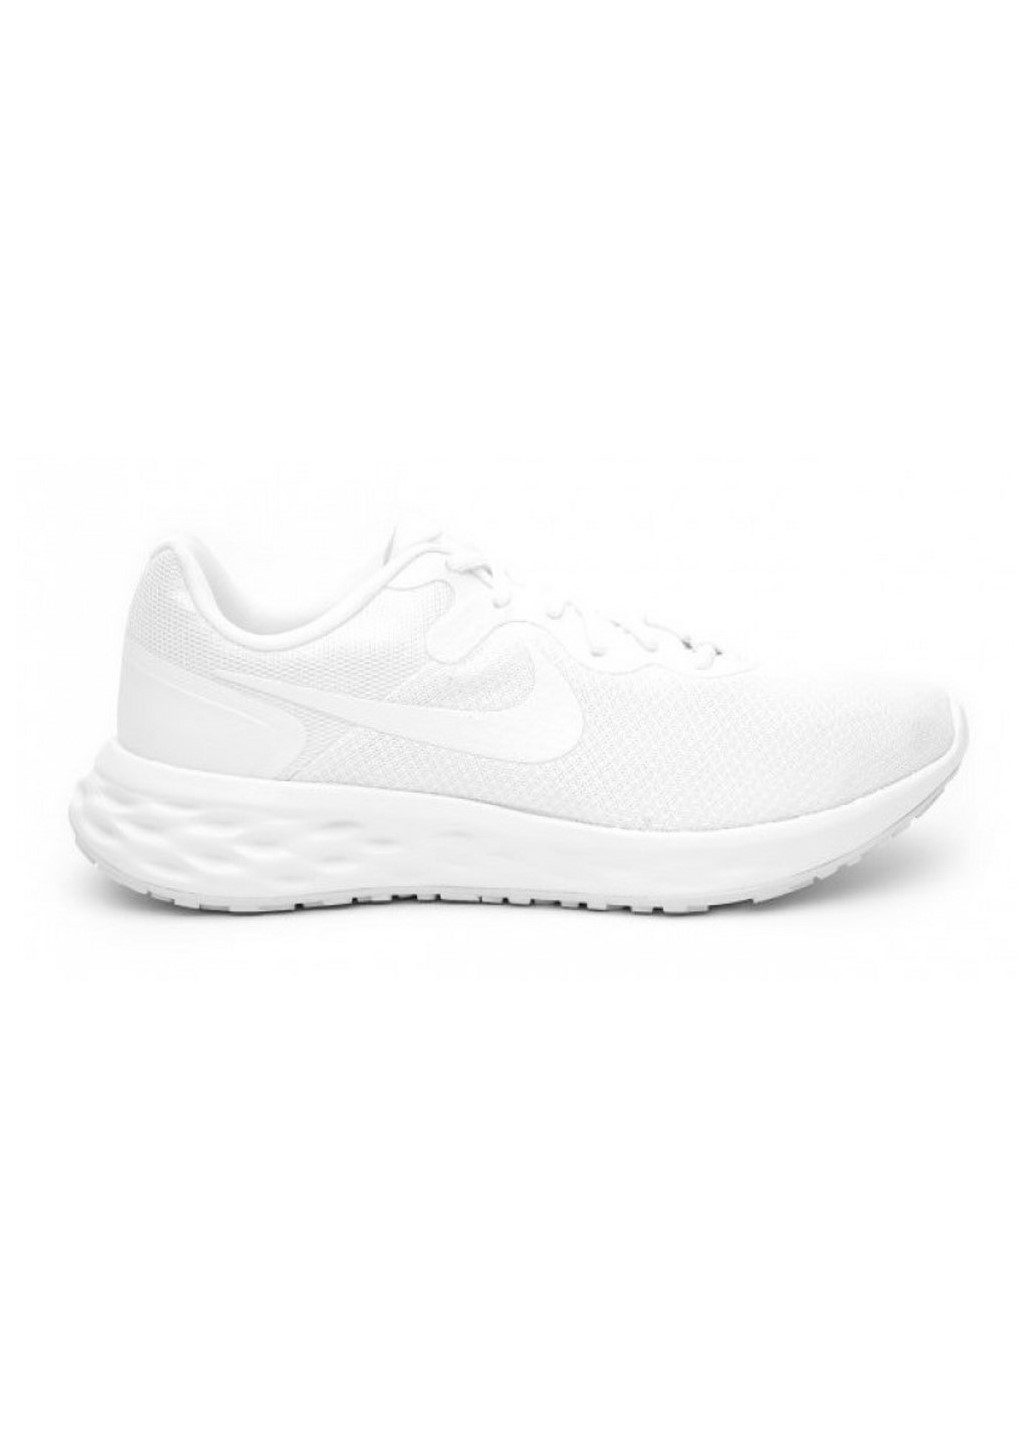 Белые всесезонные кроссовки мужские dc3728-102 Nike REVOLUTION 6 NN